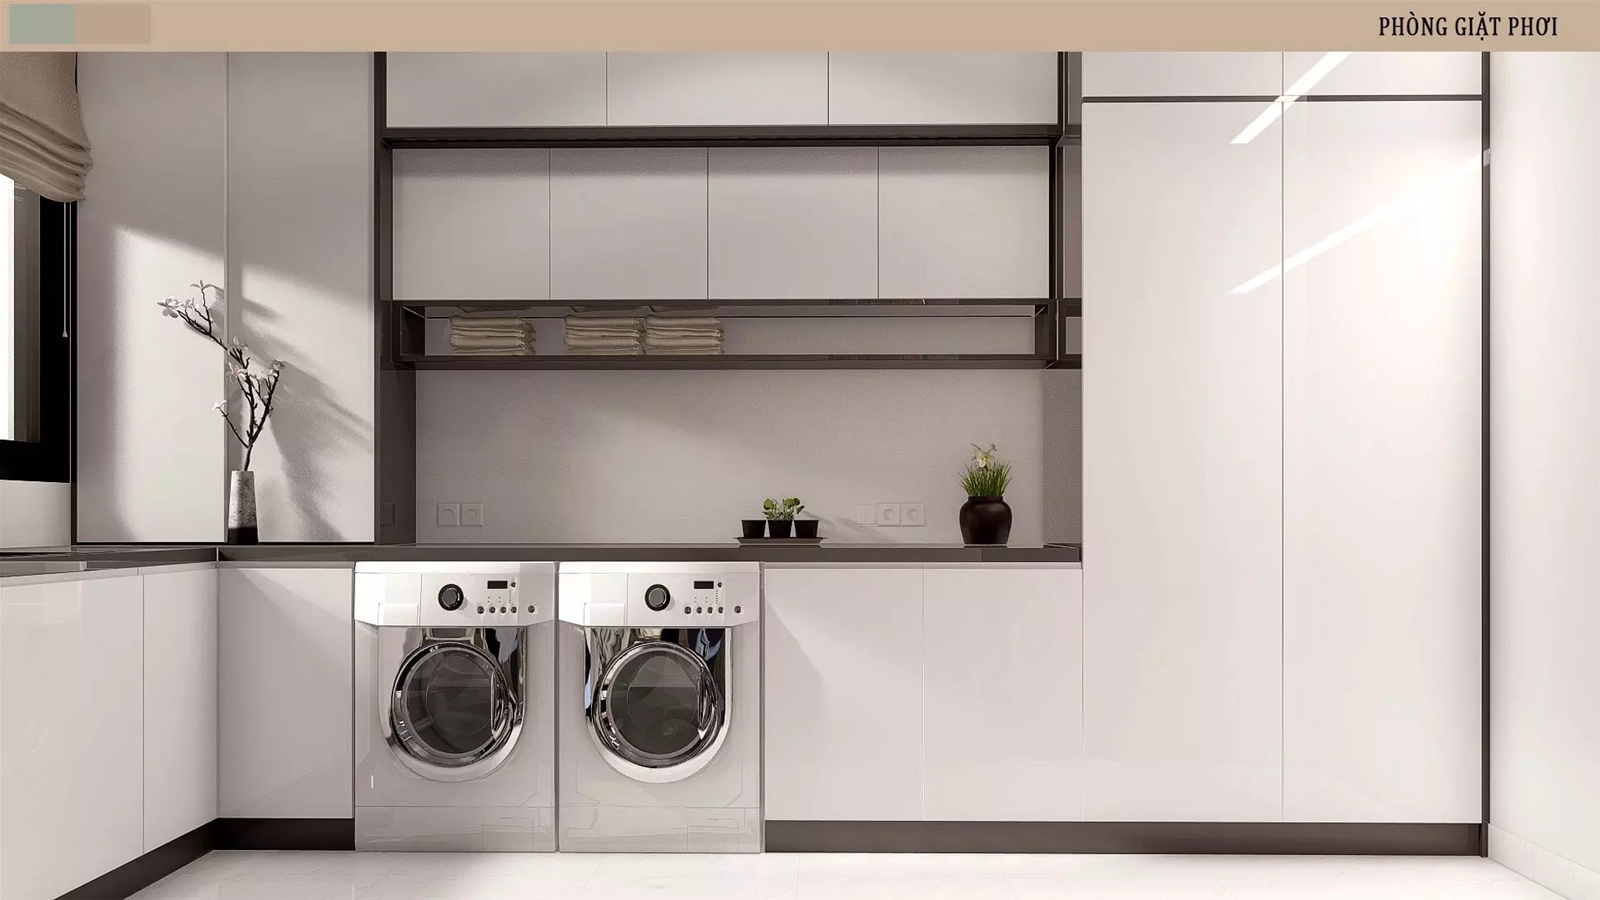 Phòng giặt sấy hiện đại với hệ thống máy giặt, sấy và tủ đựng đồ gọn gàng. 